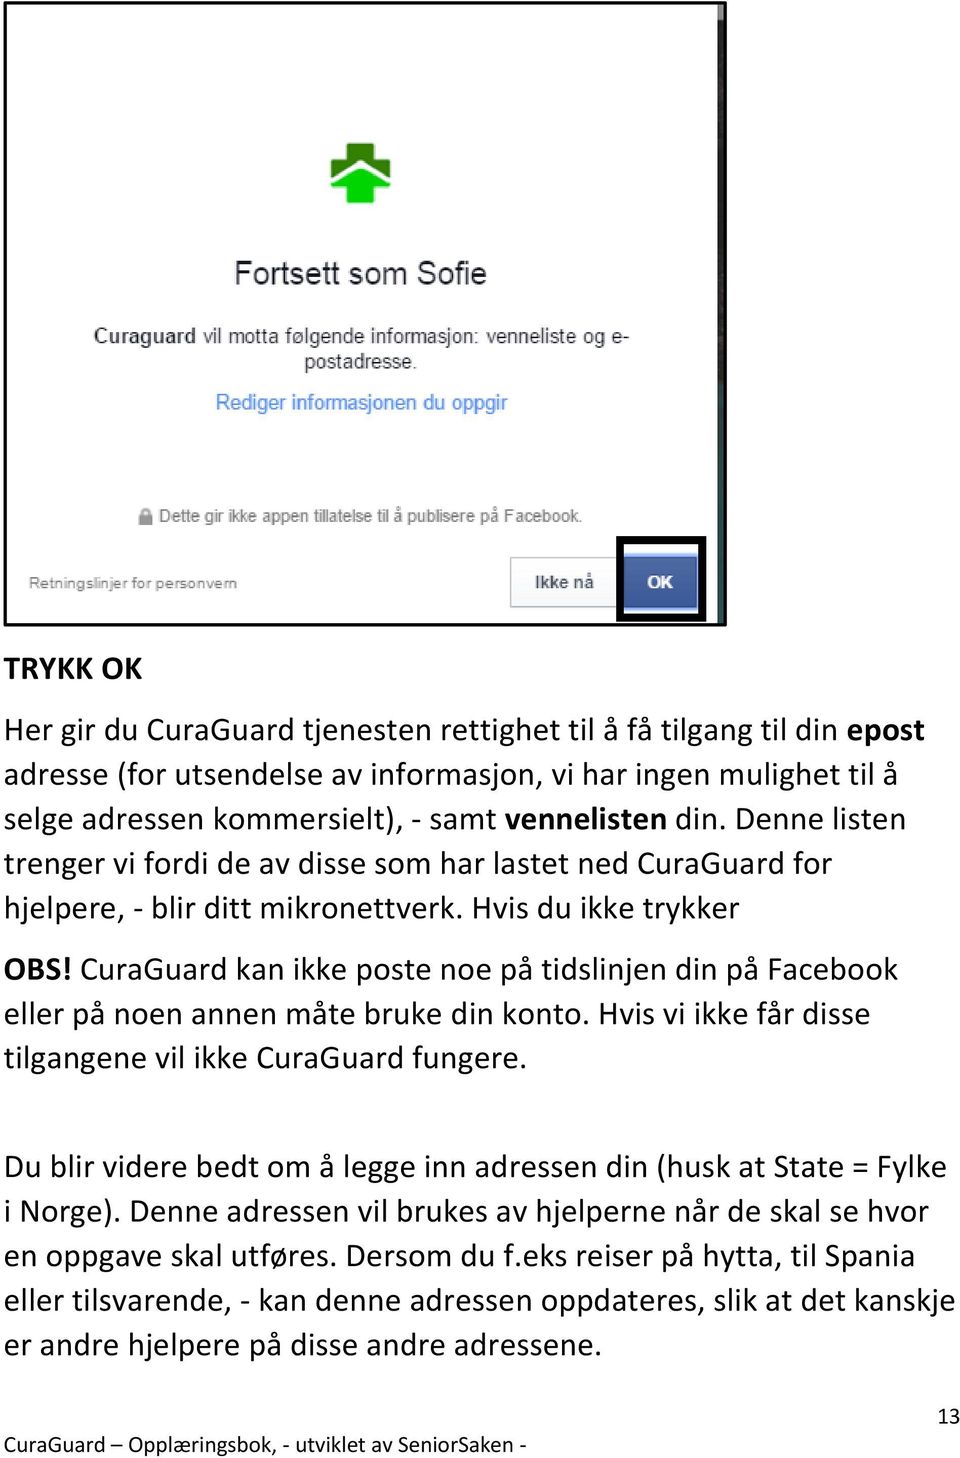 CuraGuard kan ikke poste noe på tidslinjen din på Facebook eller på noen annen måte bruke din konto. Hvis vi ikke får disse tilgangene vil ikke CuraGuard fungere.